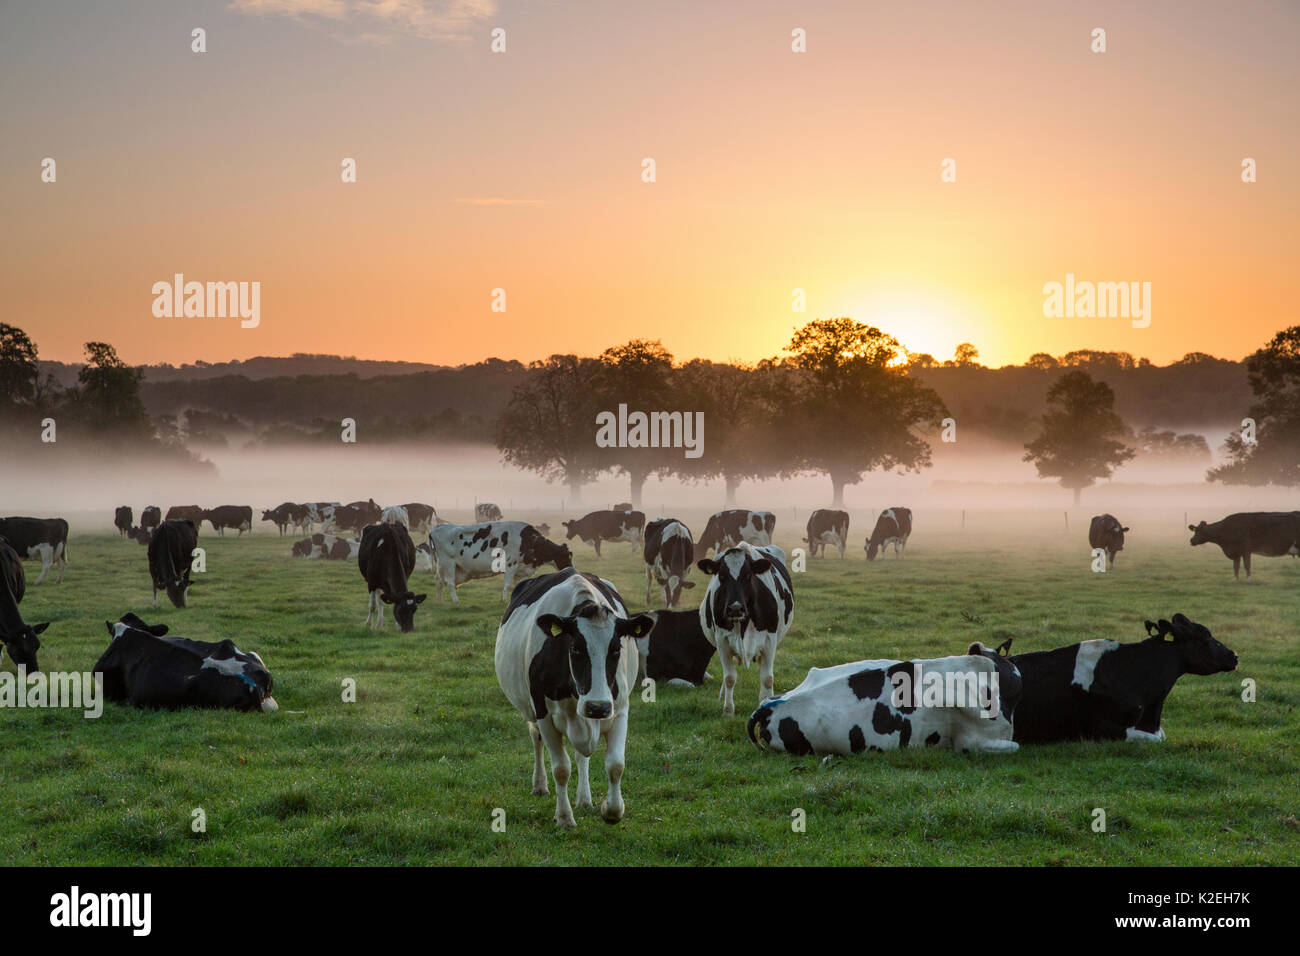 Le mucche in un campo all'alba, con nebbia rising, Milborne Port, Somerset, Inghilterra, Regno Unito, ottobre 2014. Foto Stock